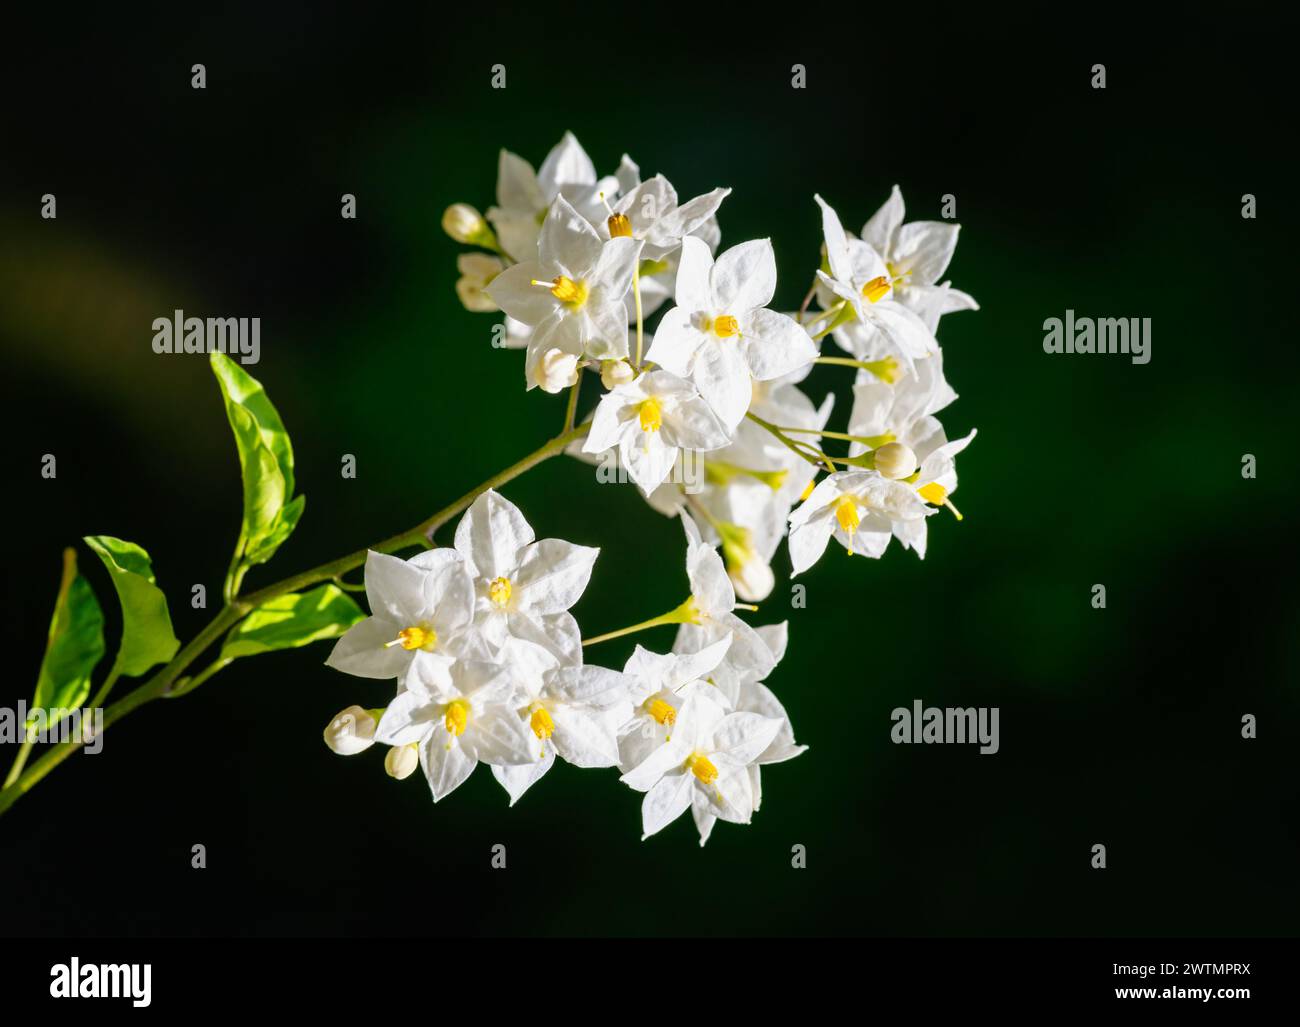 Macro of a white jasmine nightshade flower Stock Photo